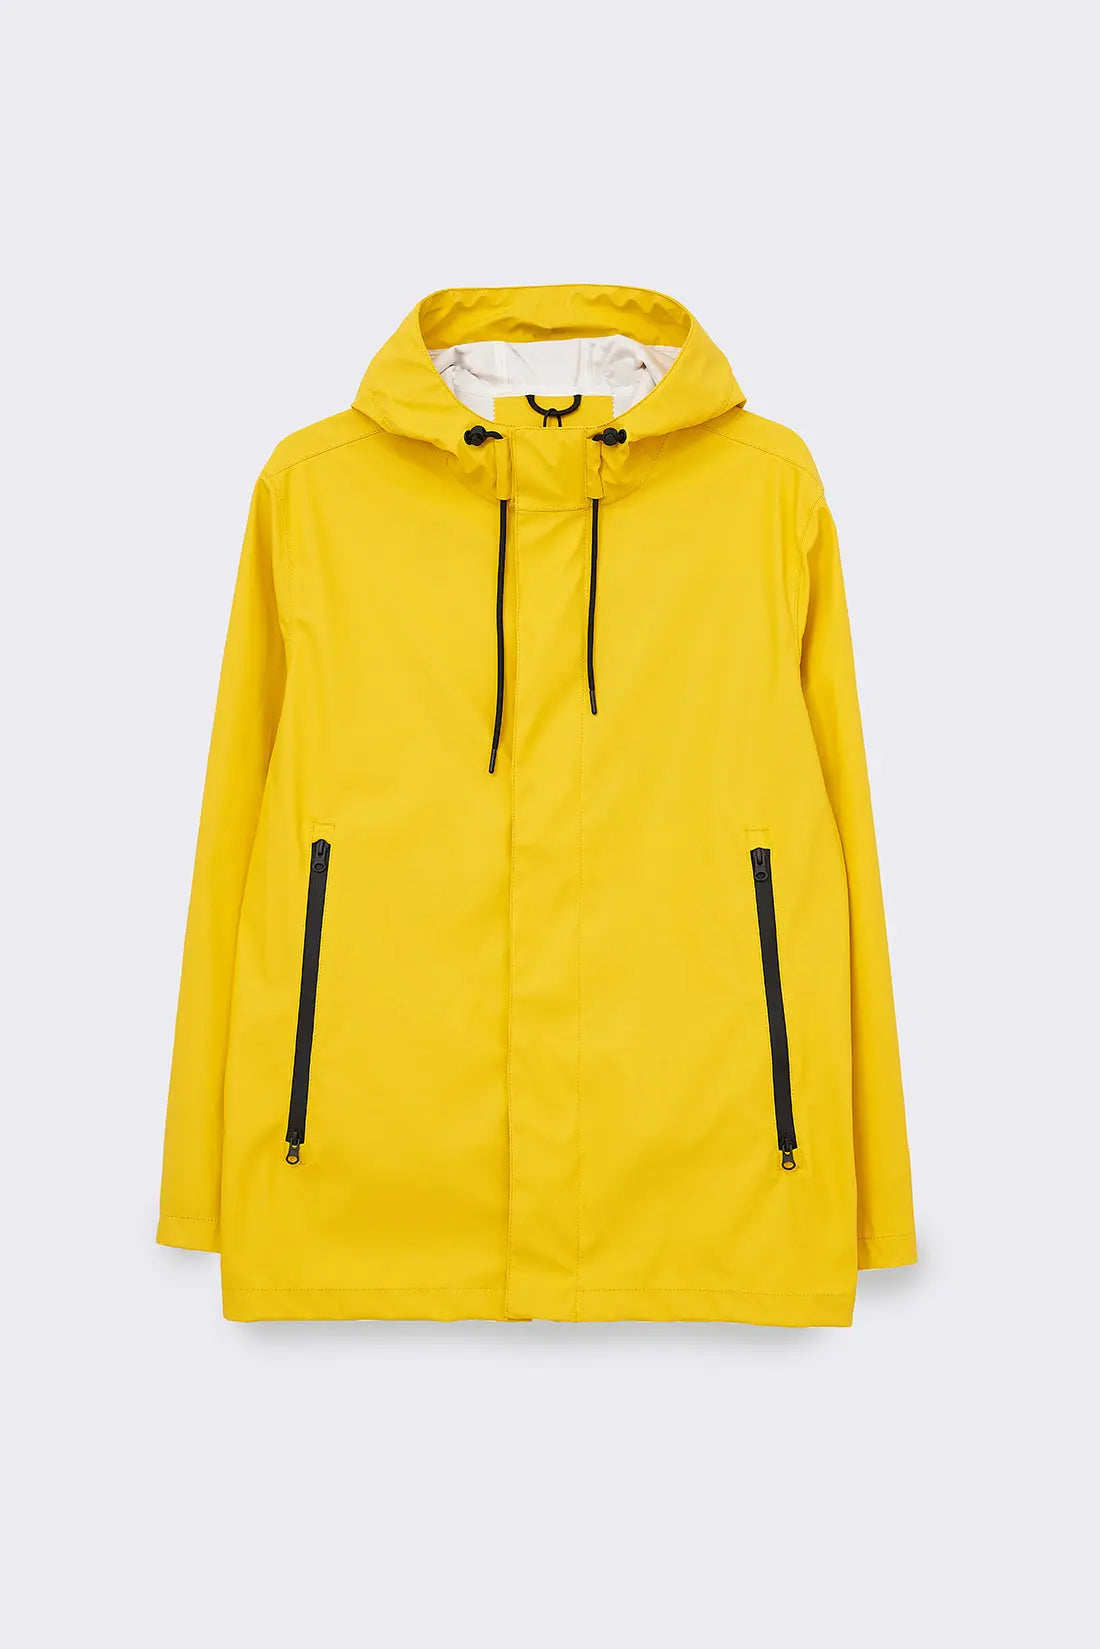  Chubasquero reflectante, nuevo abrigo de algodón para adultos,  color amarillo fluorescente, ropa impermeable (color B, tamaño: XXXL) :  Herramientas y Mejoras del Hogar